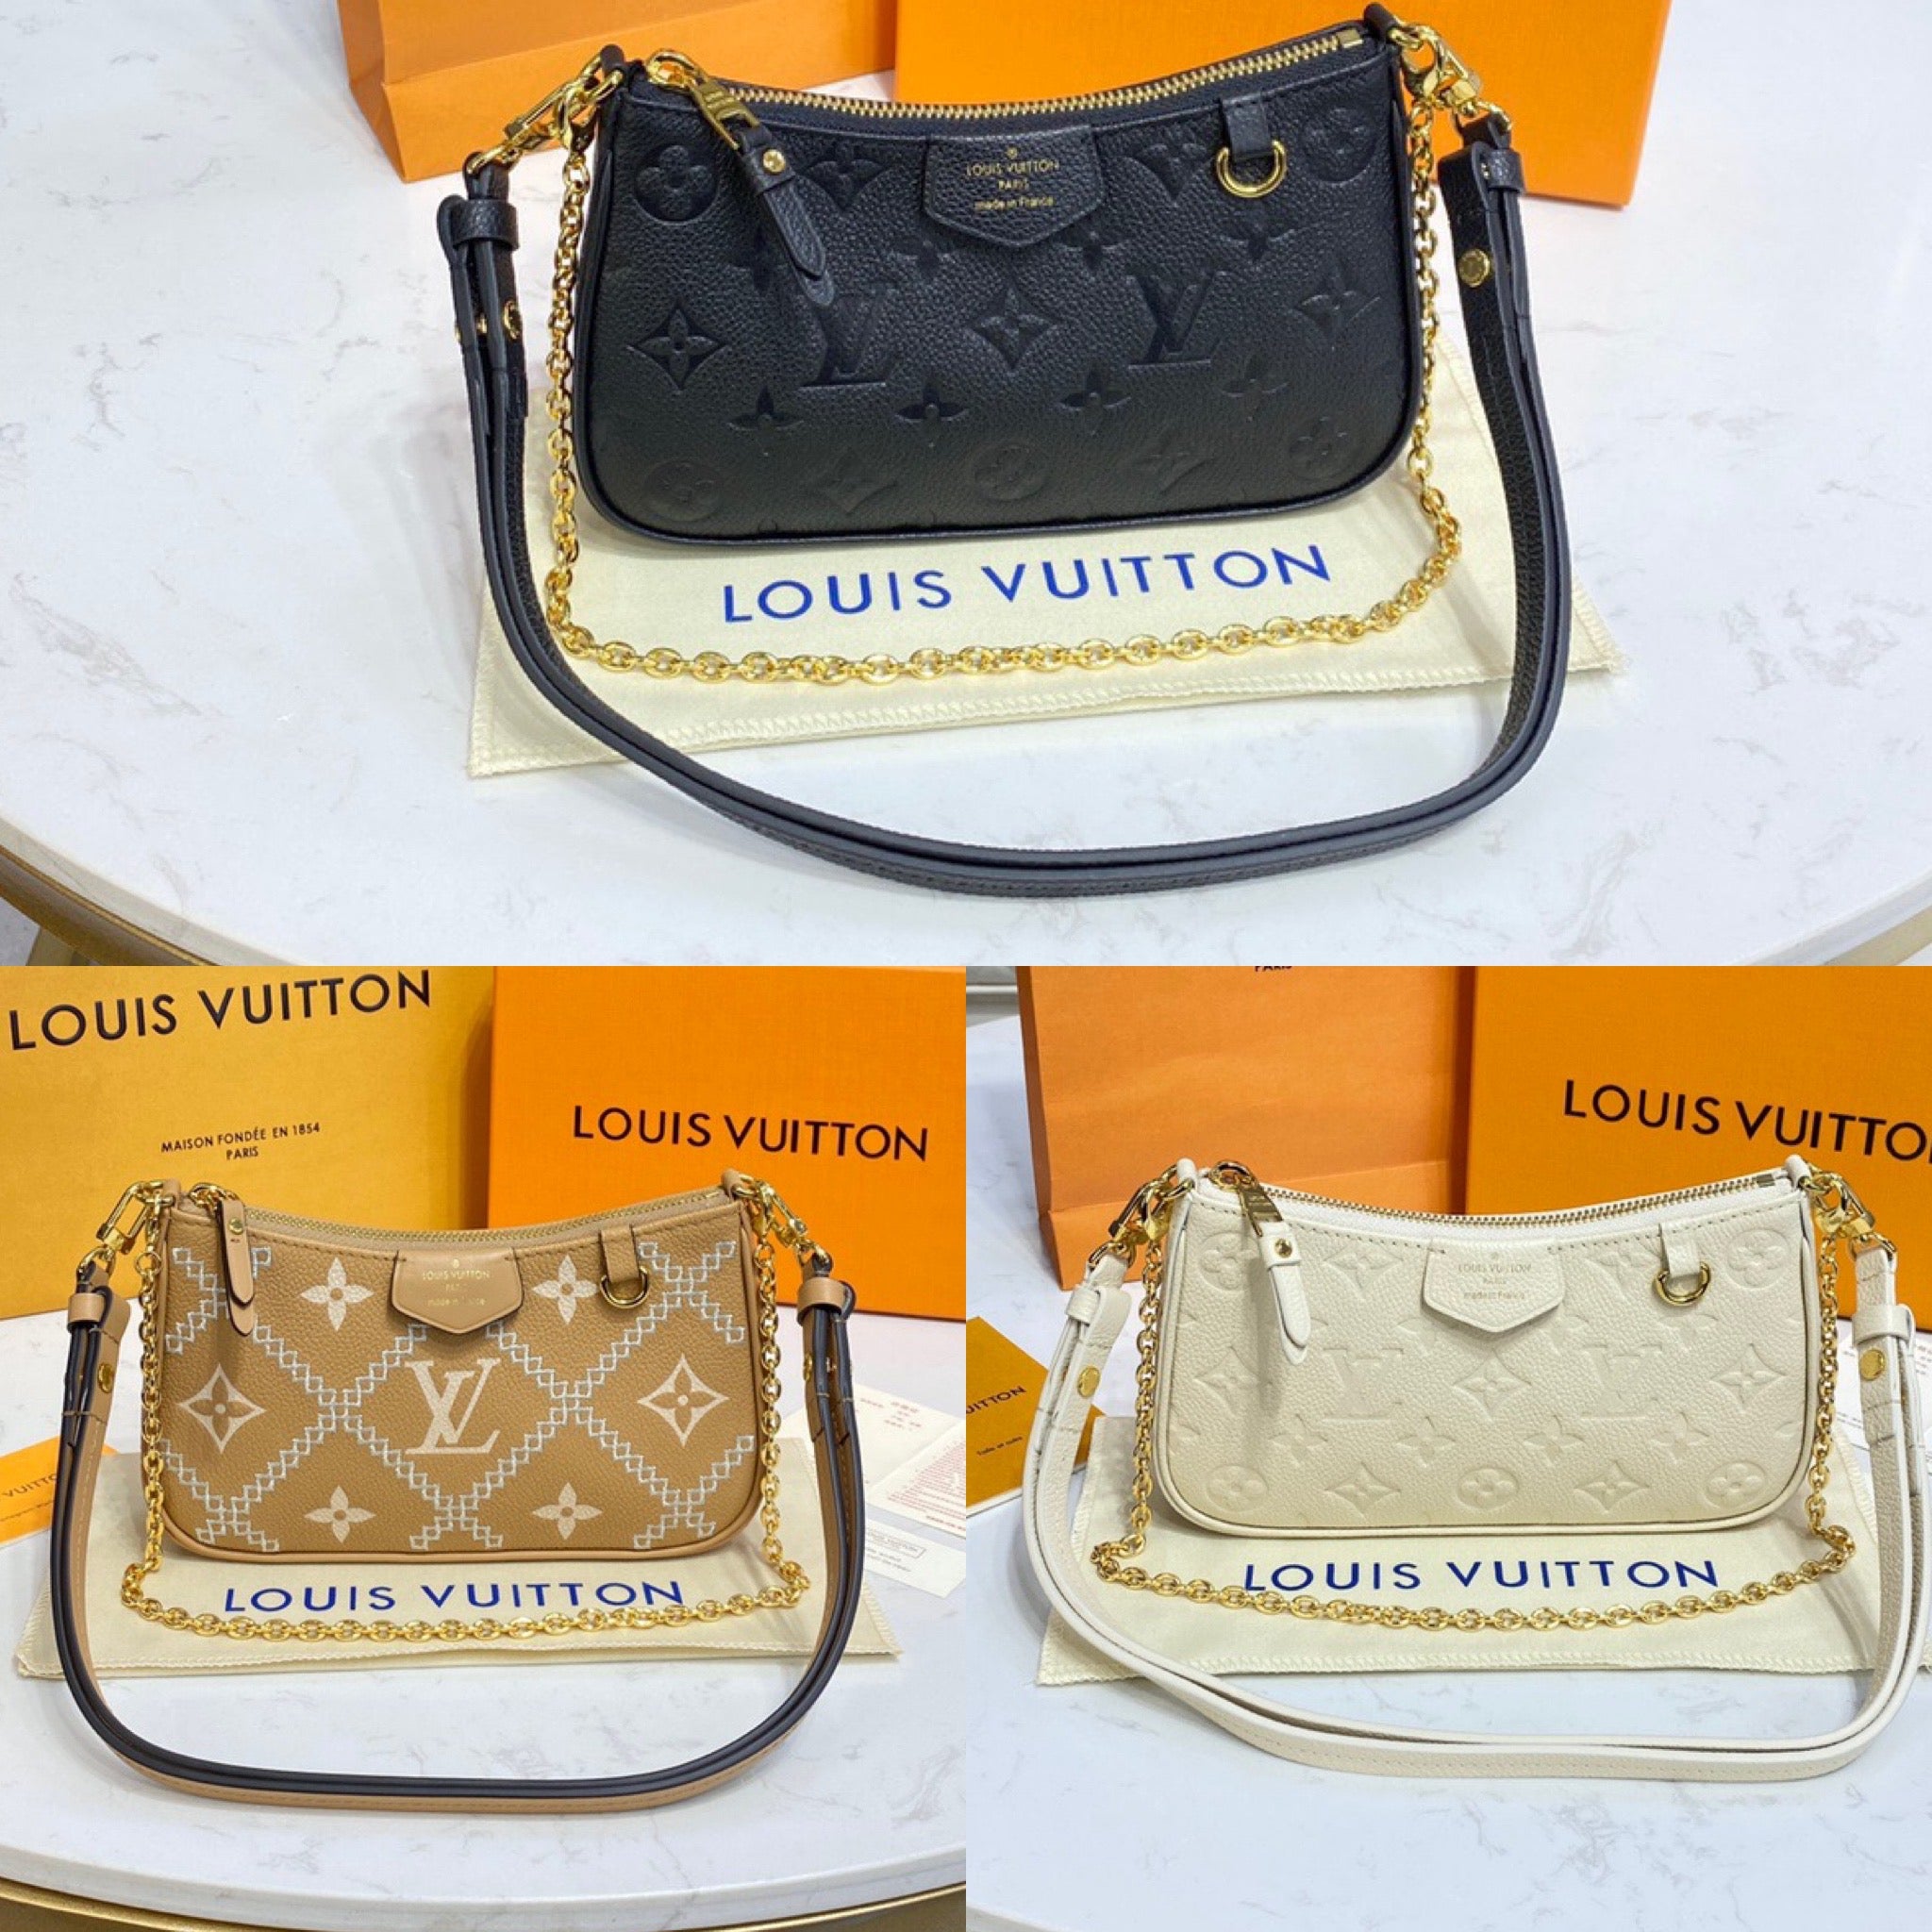 Louis Vuitton Easy Pouch on Strap in Empreinte 